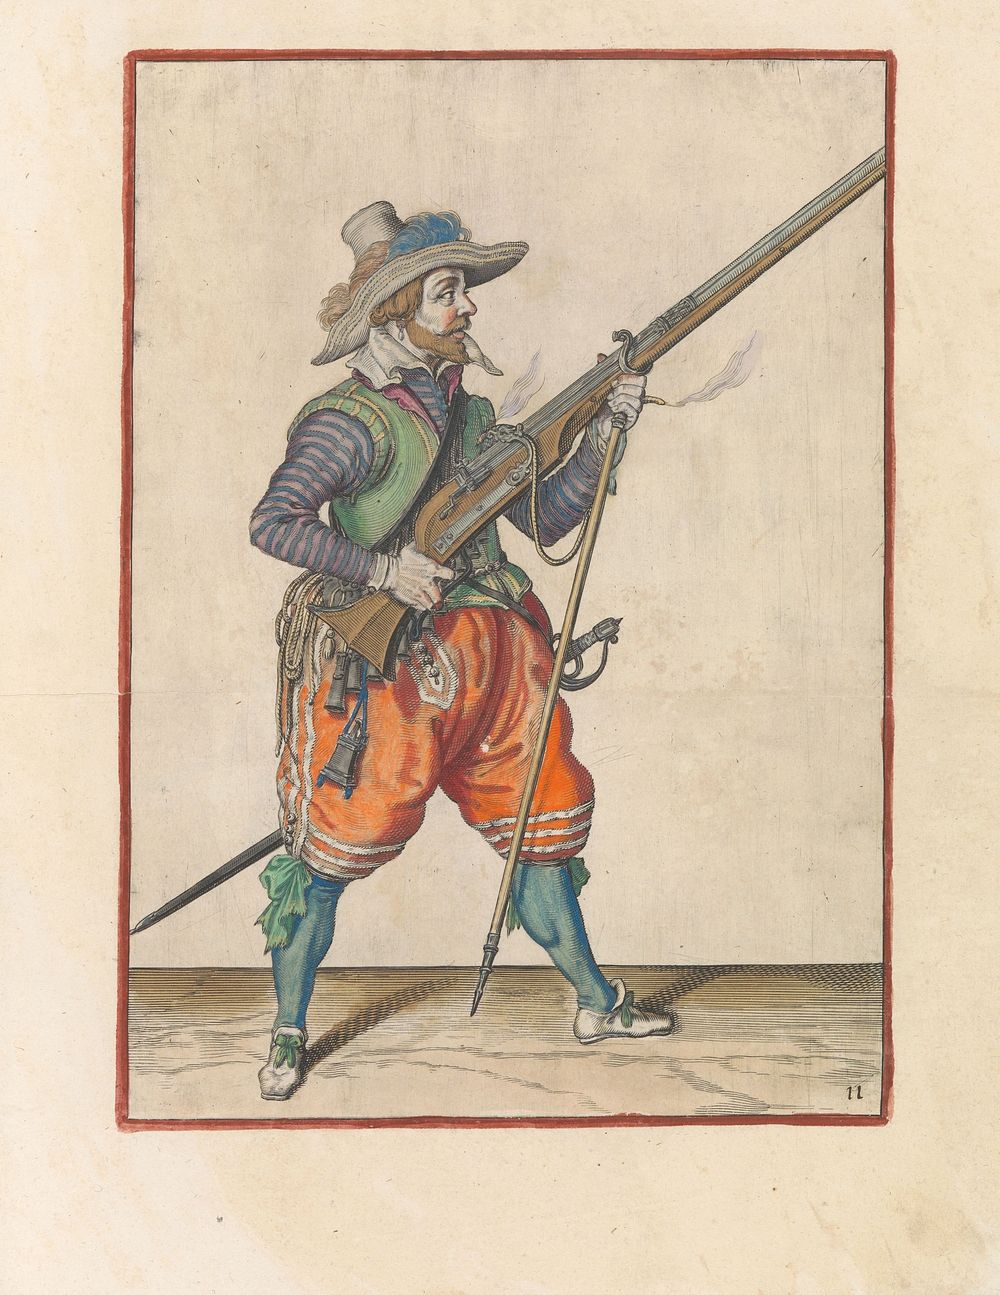 Soldaat die zijn furket onder zijn musket plaatst (c. 1597 - 1607) by Jacques de Gheyn II and Jacques de Gheyn II